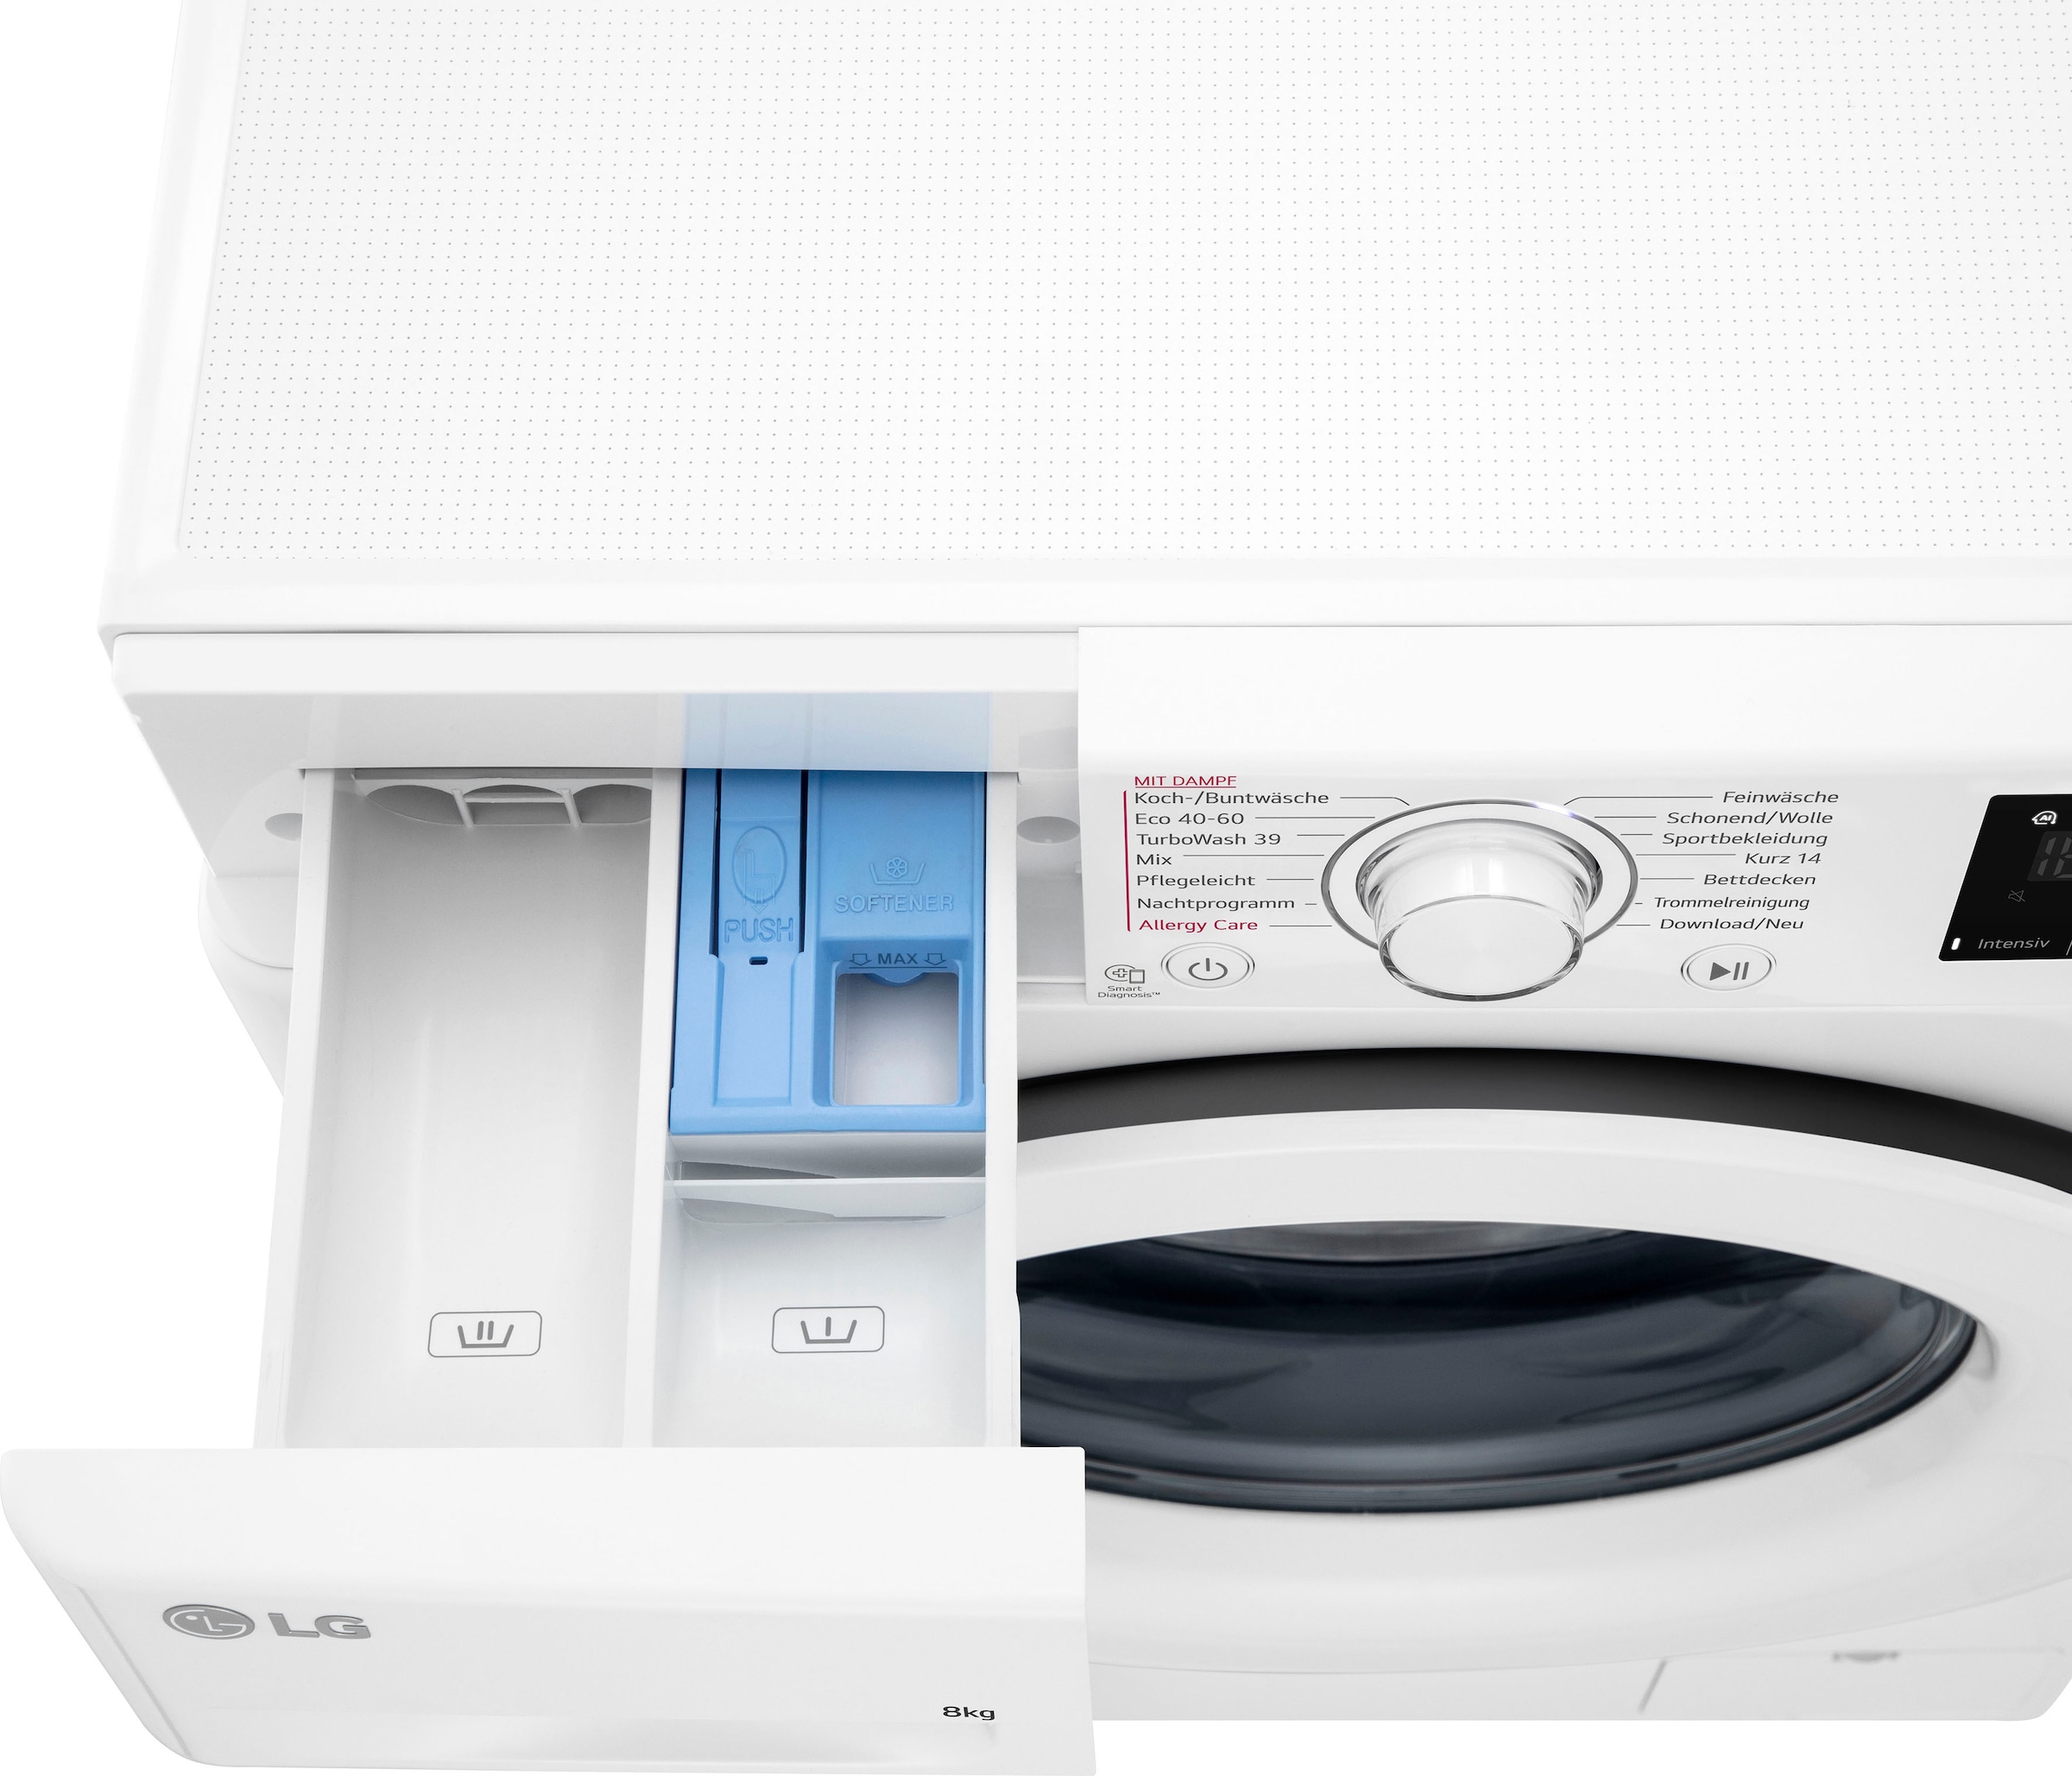 LG Waschmaschine »F4WV3183«, 3, bestellen 8 1400 kg, U/min F4WV3183, online